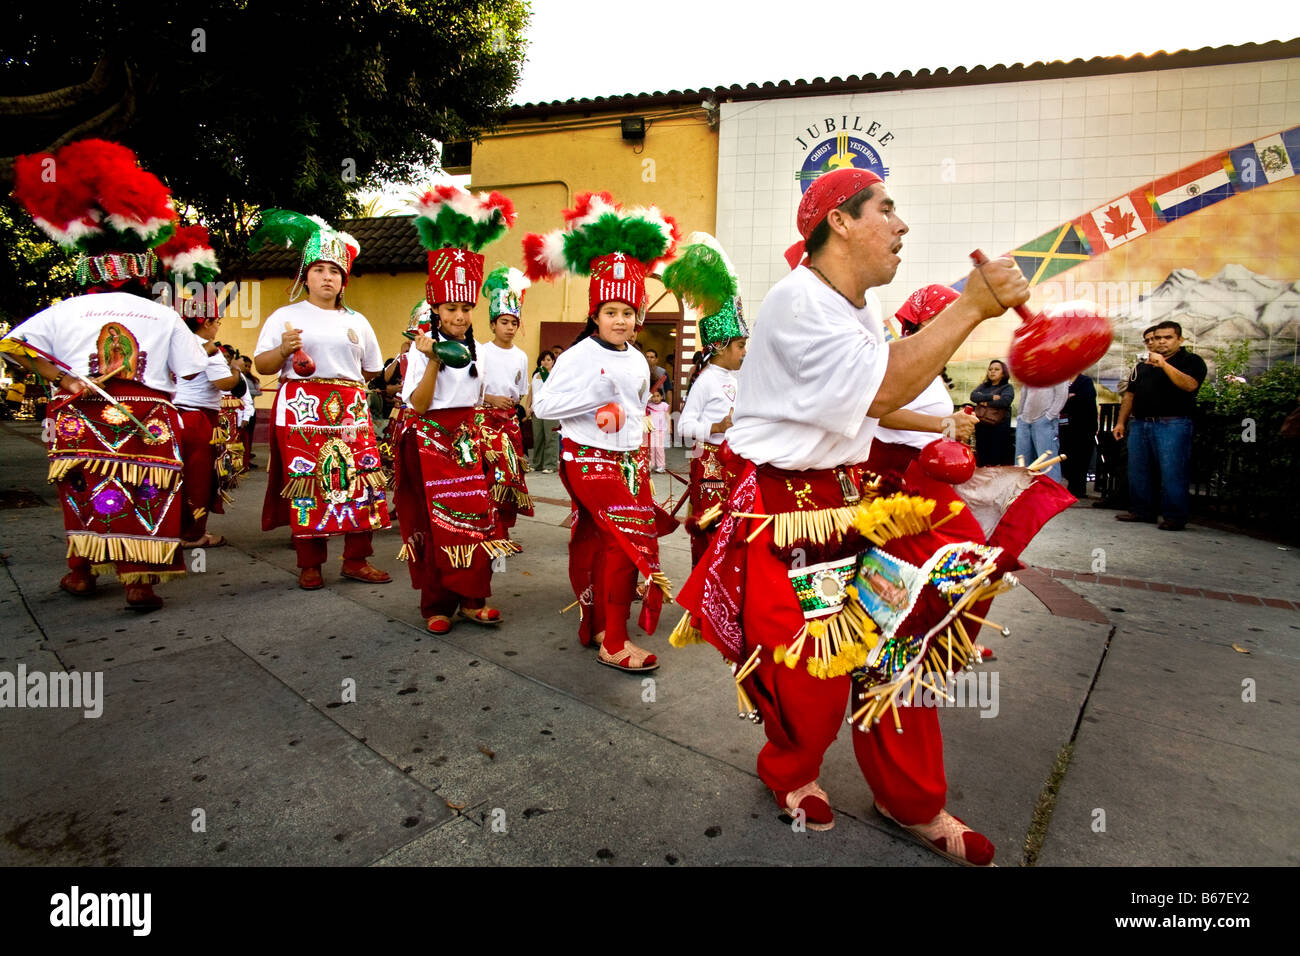 Danseurs folkloriques mexicaines indigènes vêtus de costumes pour célébrer la Journée de la mort à Los Angeles, CA, USA Banque D'Images